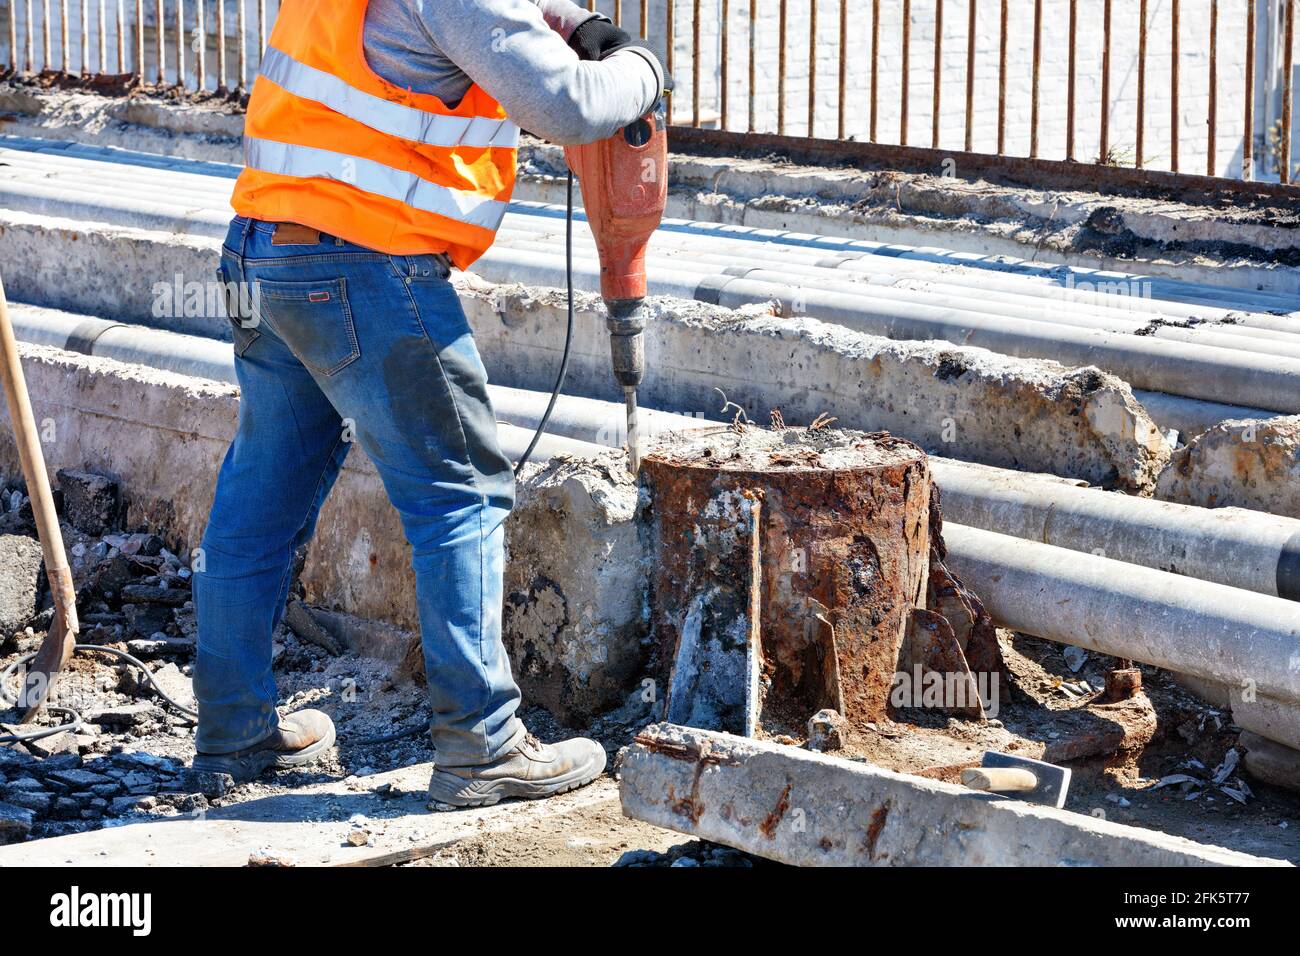 Un lavoratore stradale in un giubbotto riflettente arancione lavora con un martello pneumatico per distruggere una vecchia struttura in cemento armato intorno a un supporto arrugginito. Spazio di copia. Foto Stock